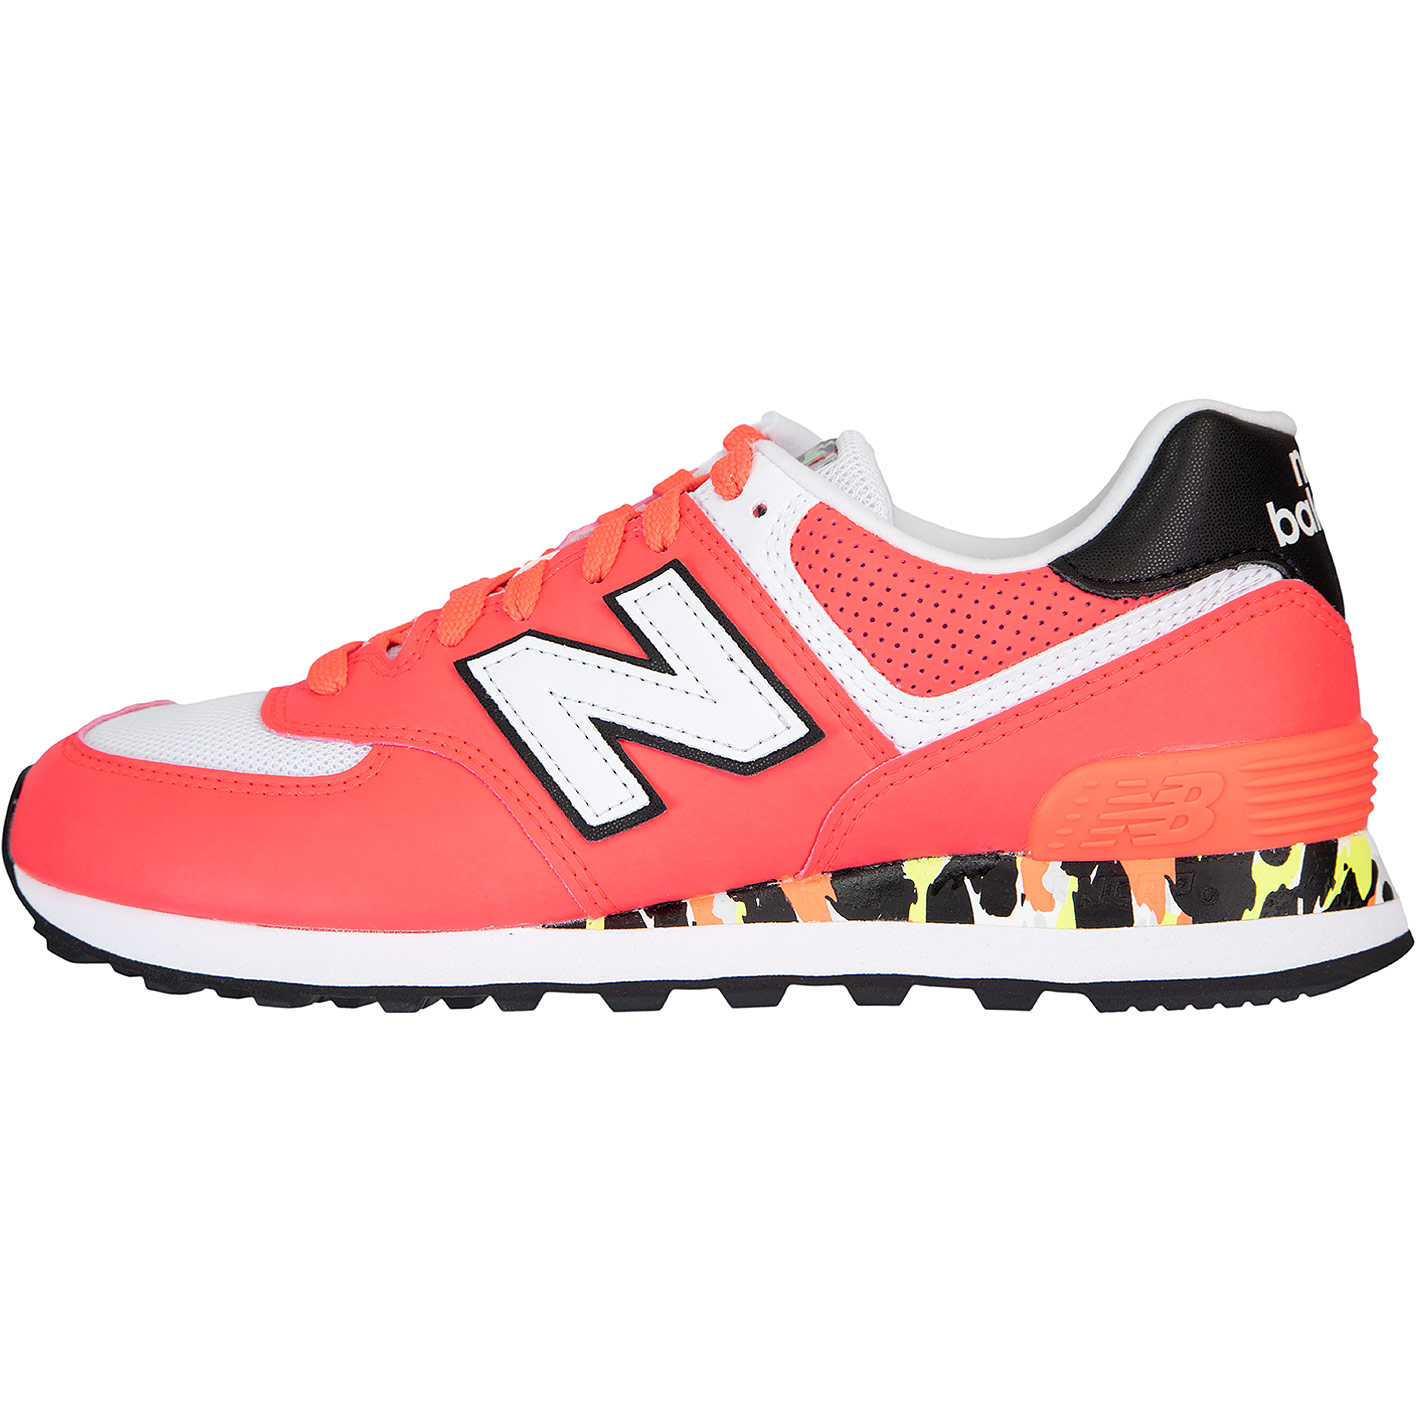 ☆ New Balance NB 574 Damen Sneaker Schuhe coral - hier bestellen!